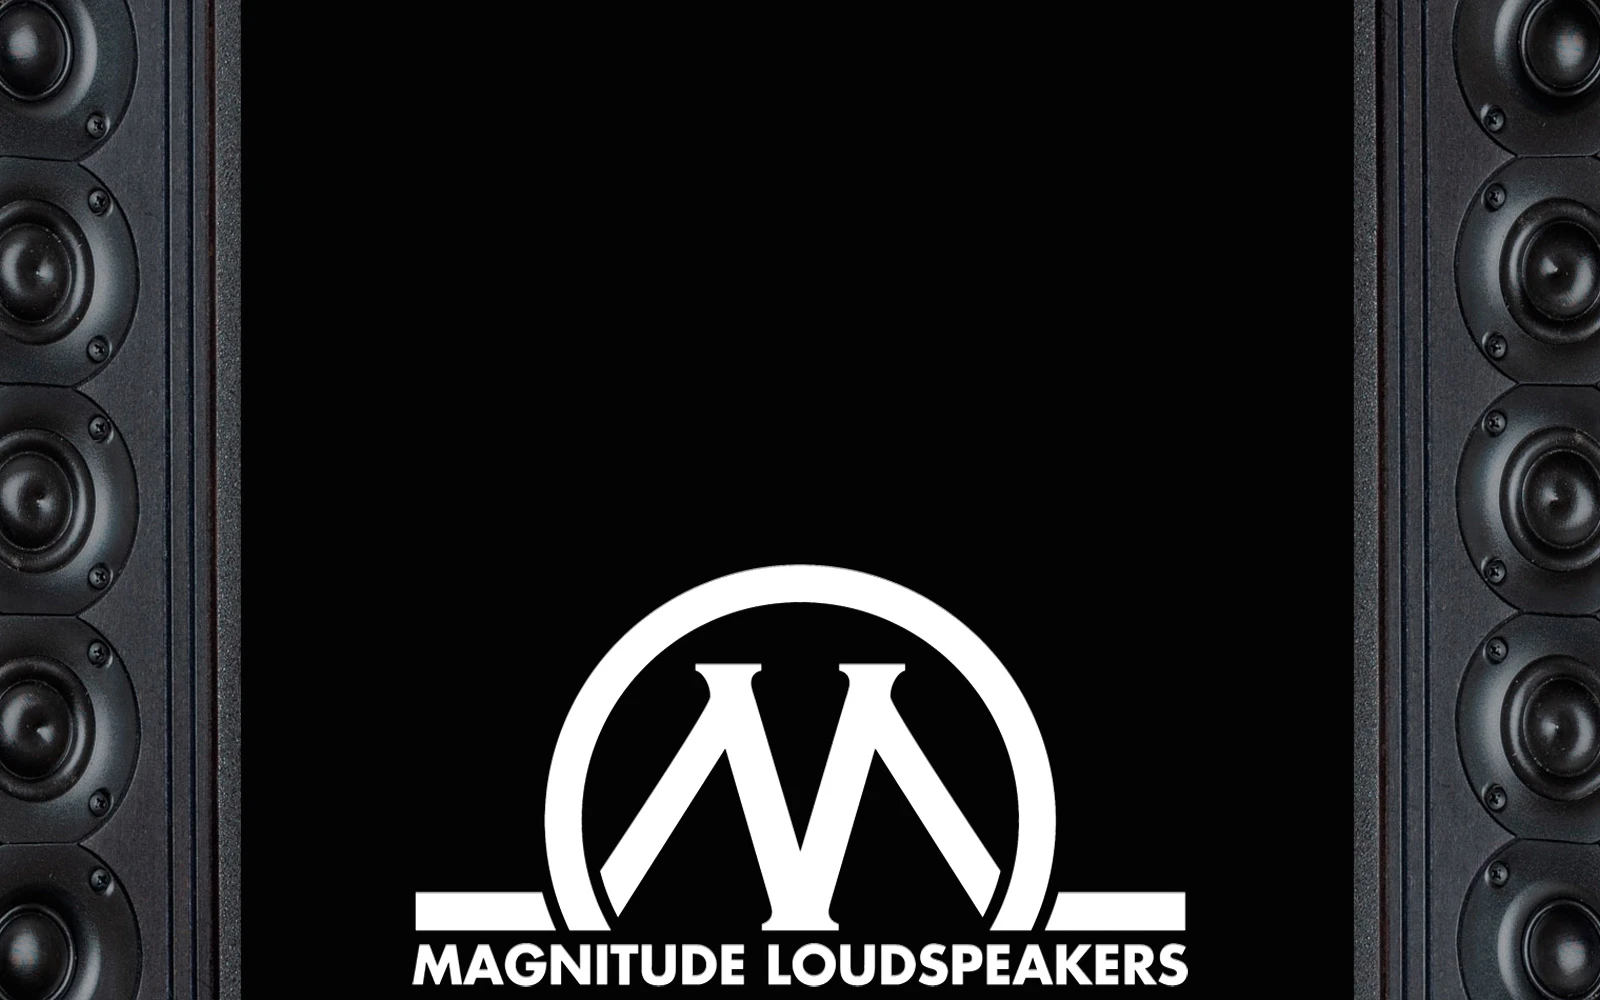 CSN Teknik har reference højtalere i hjemmebiografen fra Magnitude Loudspeakers